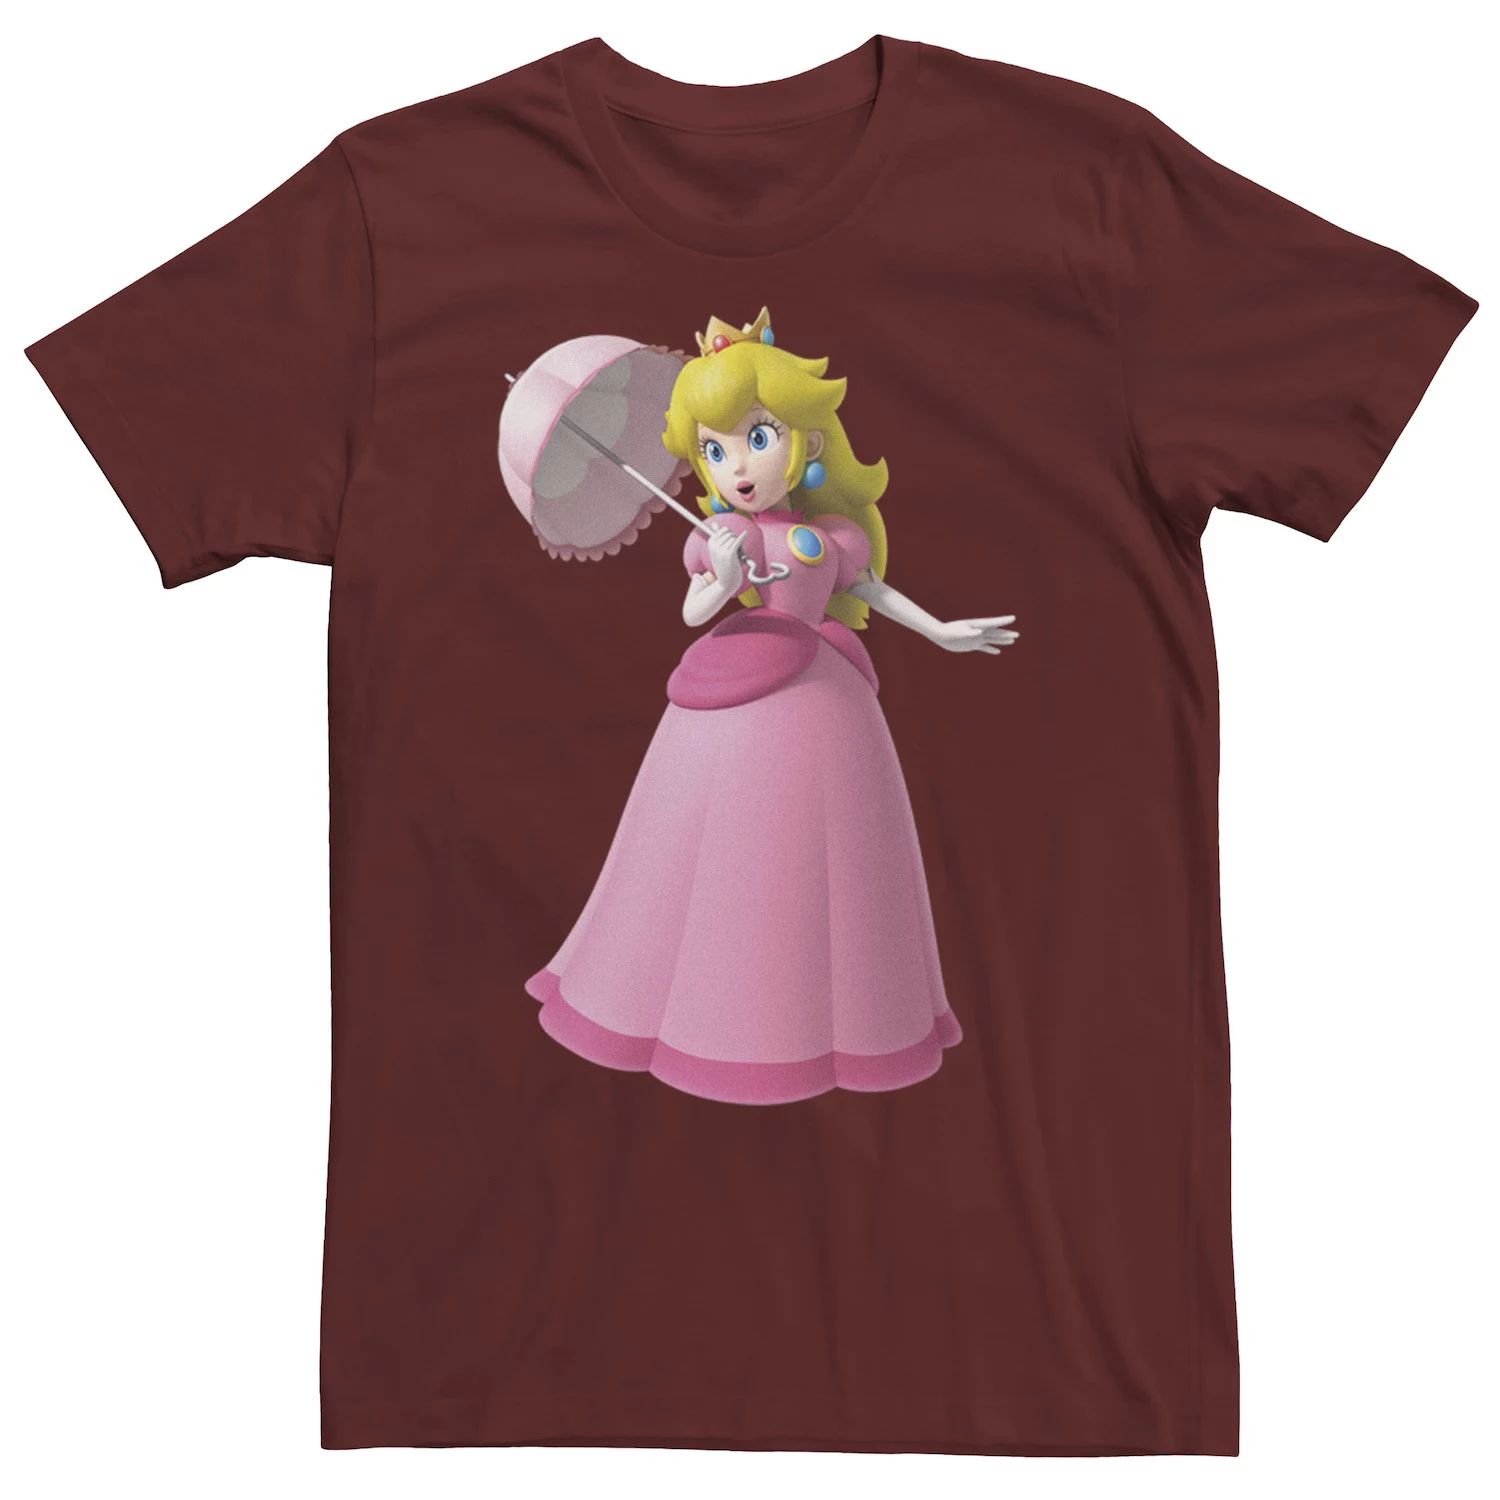 Мужская футболка Nintendo Princess с персиковым портретом Licensed Character фото